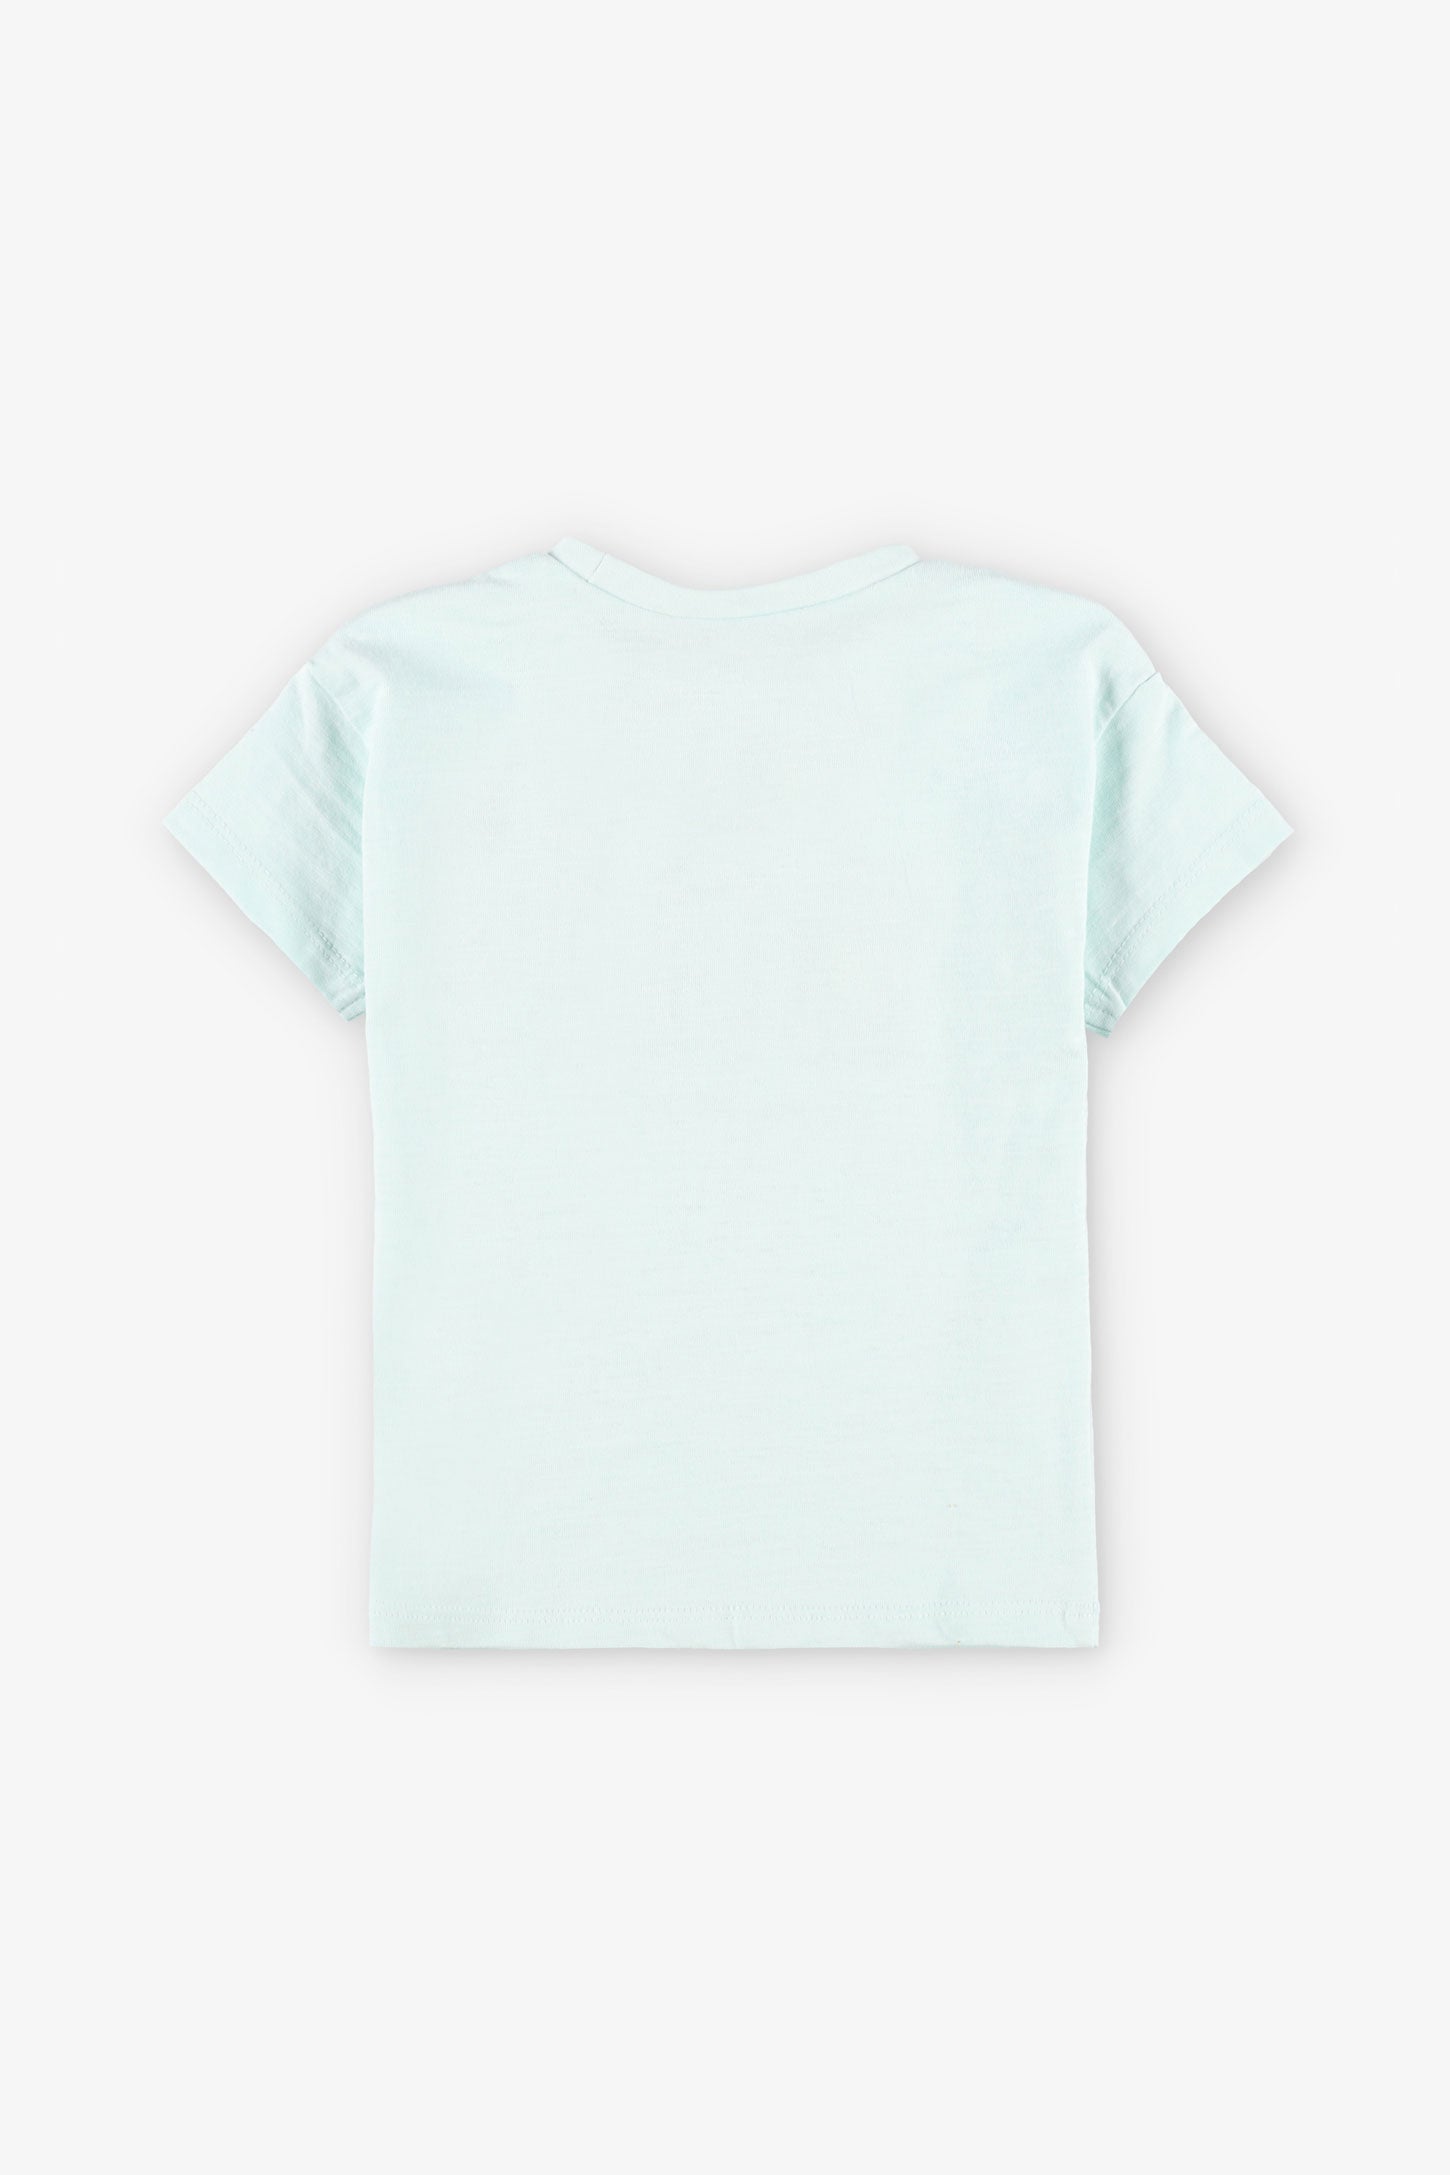 T-shirt coupe ample en coton, 2T-3T, 2/15$ - Bébé fille && SARCELLE